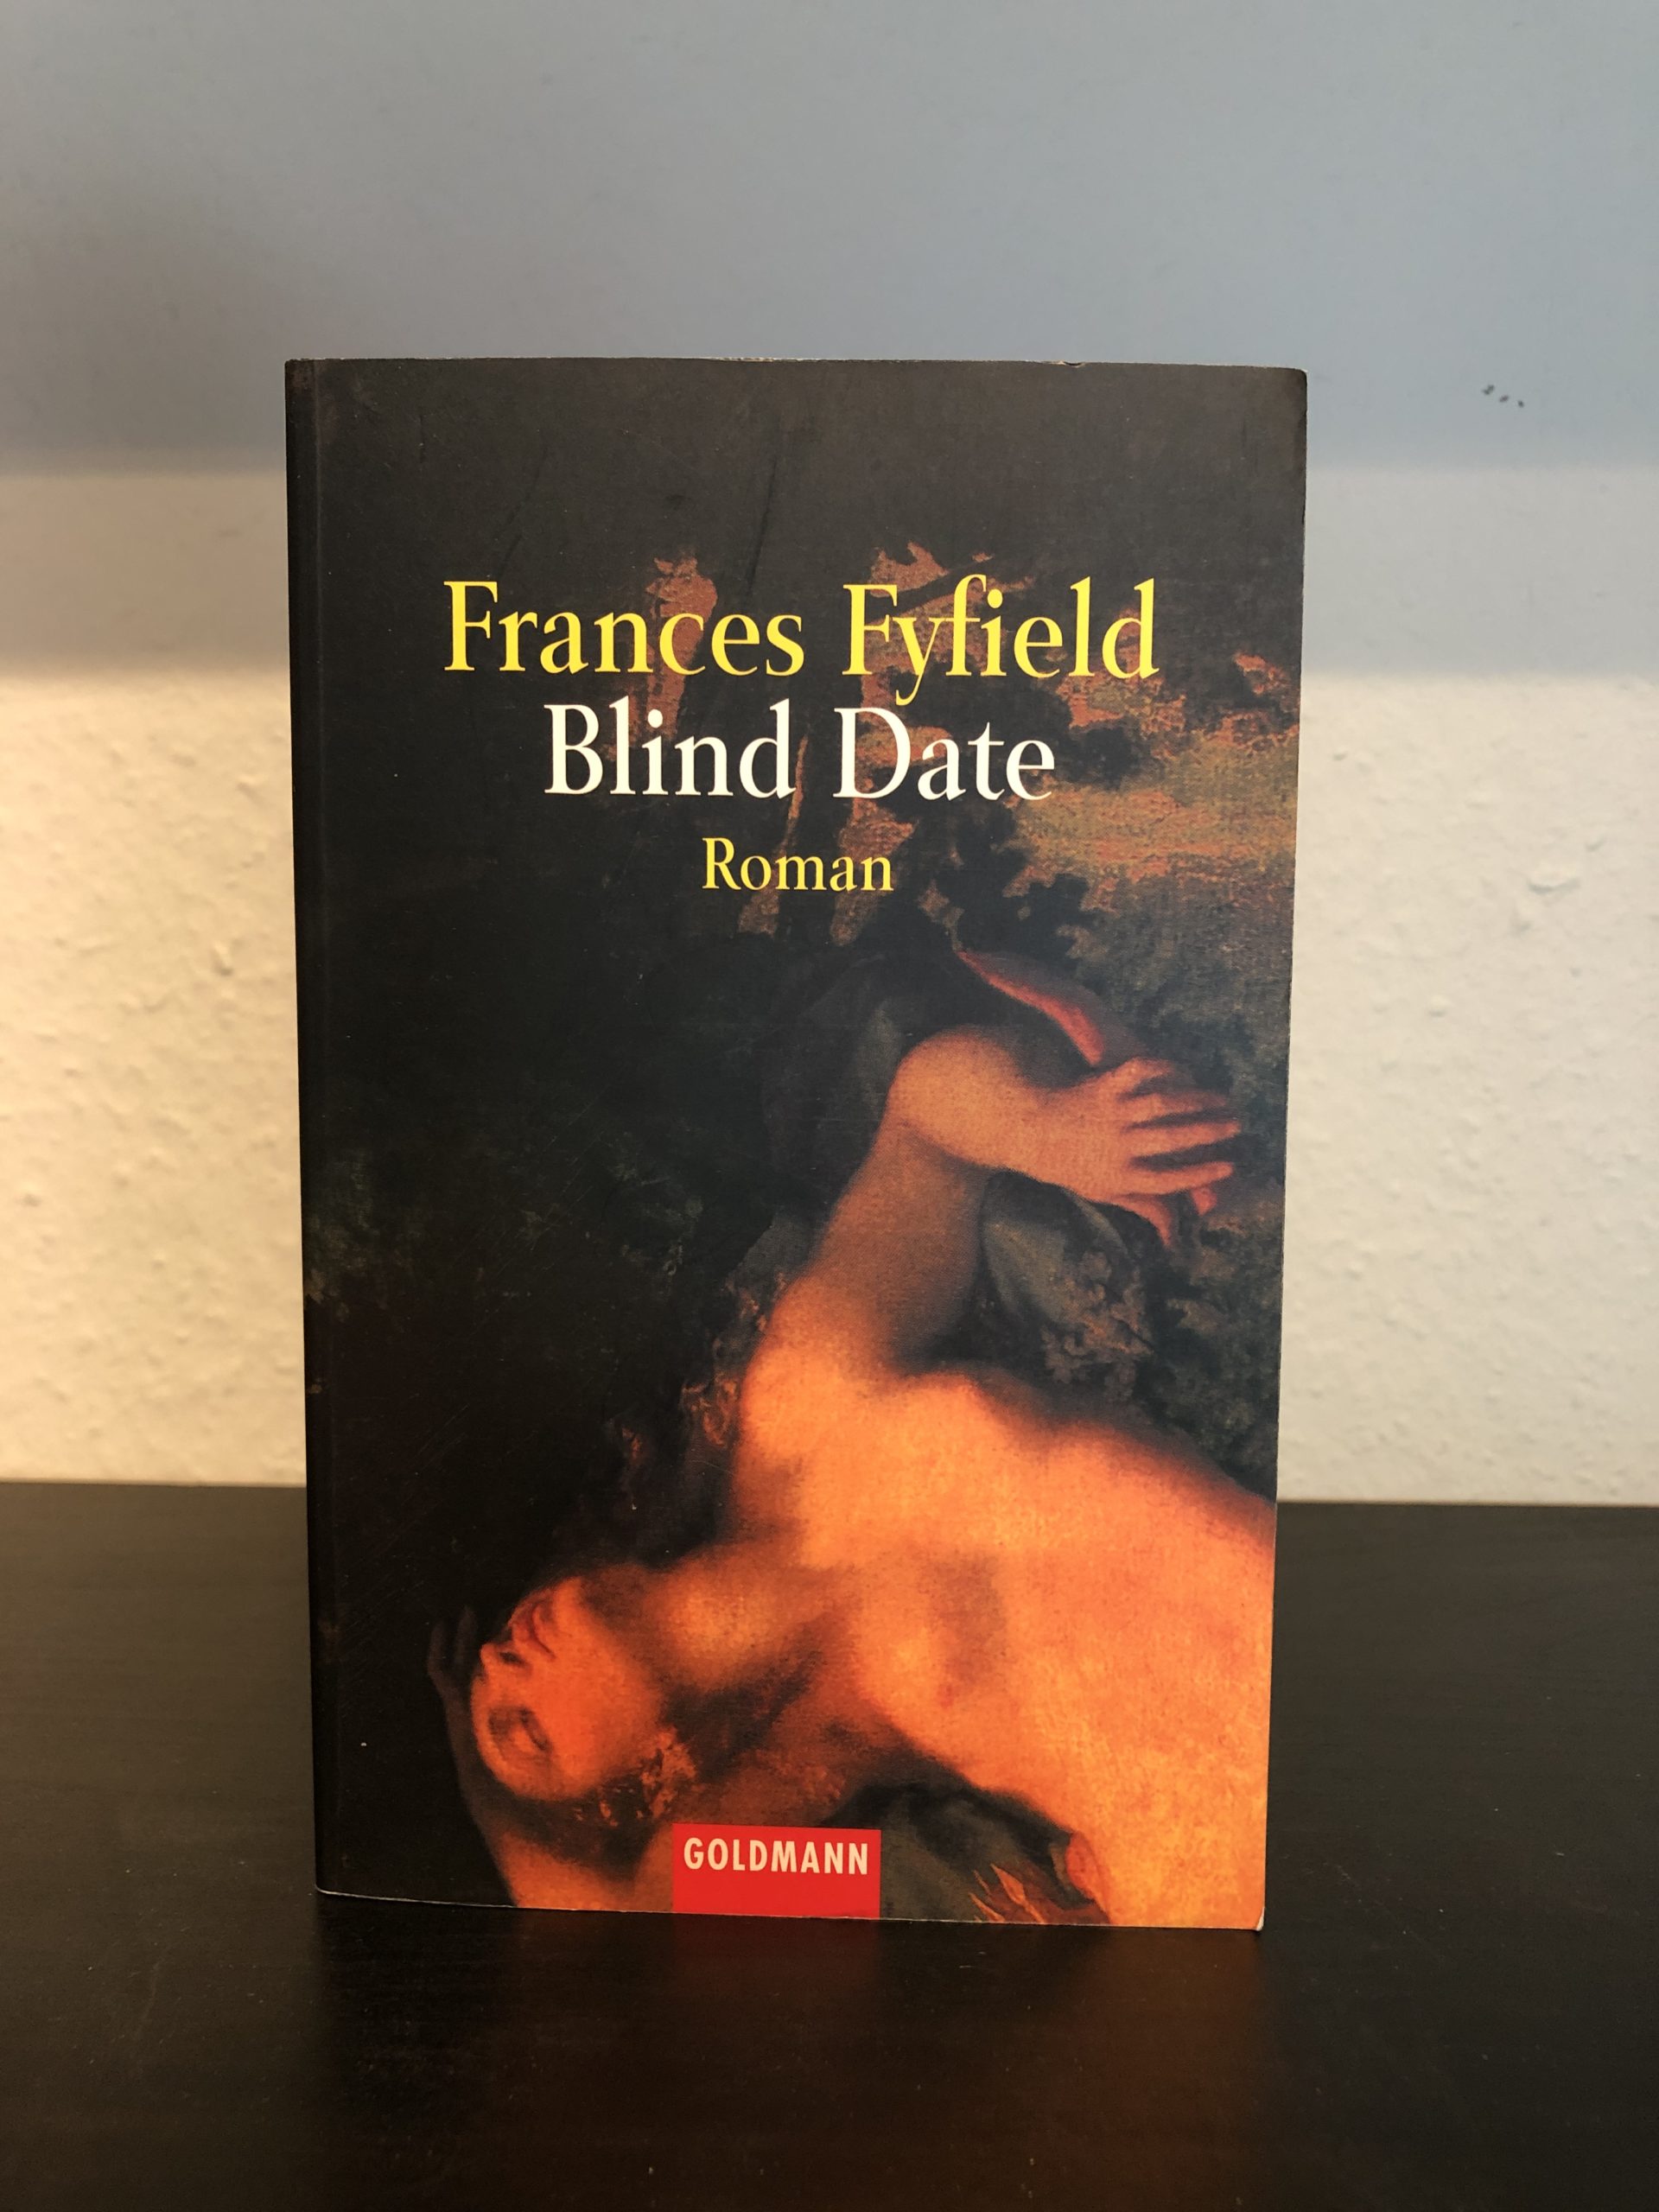 Blind Date - Frances Fyfield-image